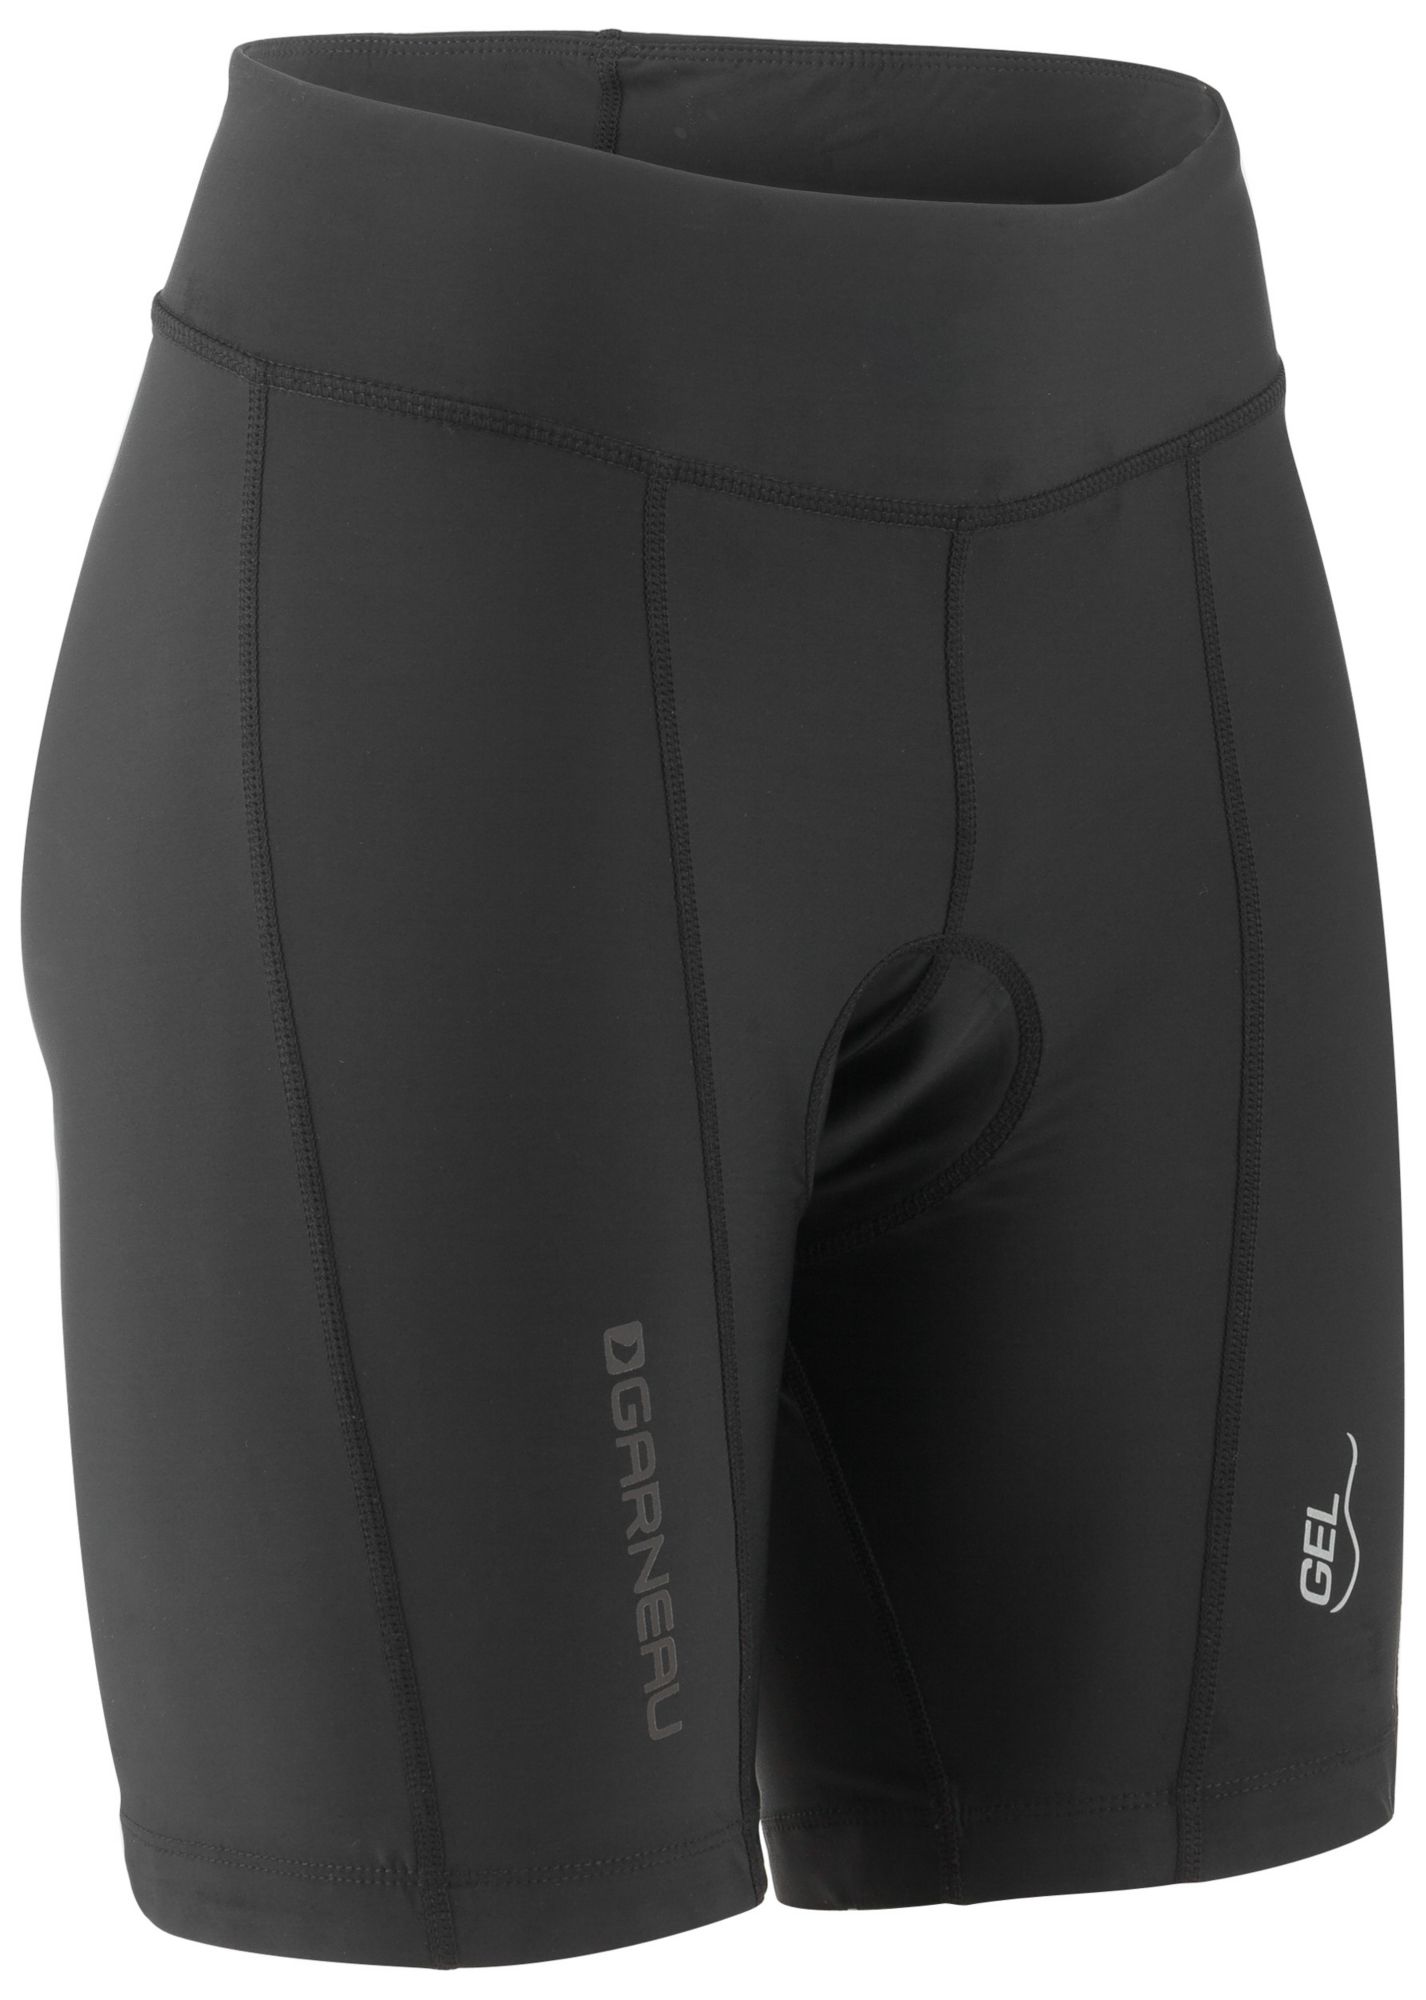 louis garneau women's gel cycling shorts